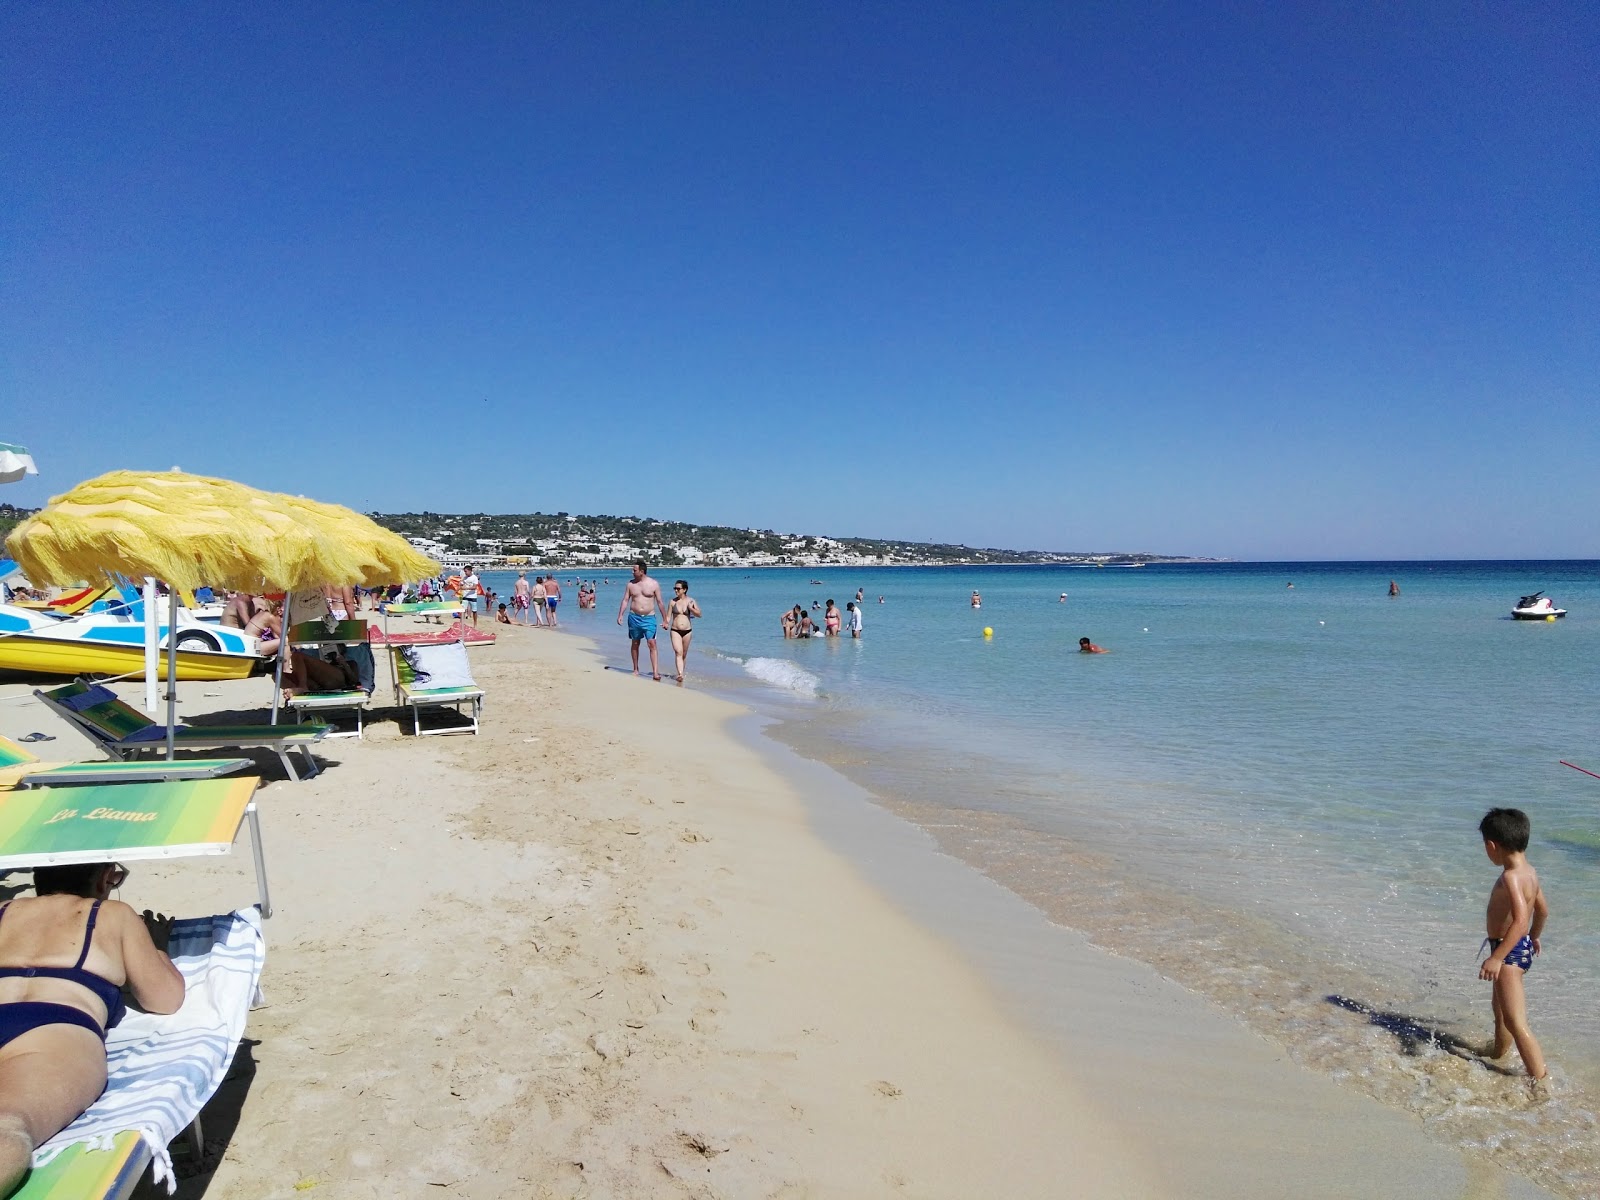 Pescoluse Plajı'in fotoğrafı parlak ince kum yüzey ile